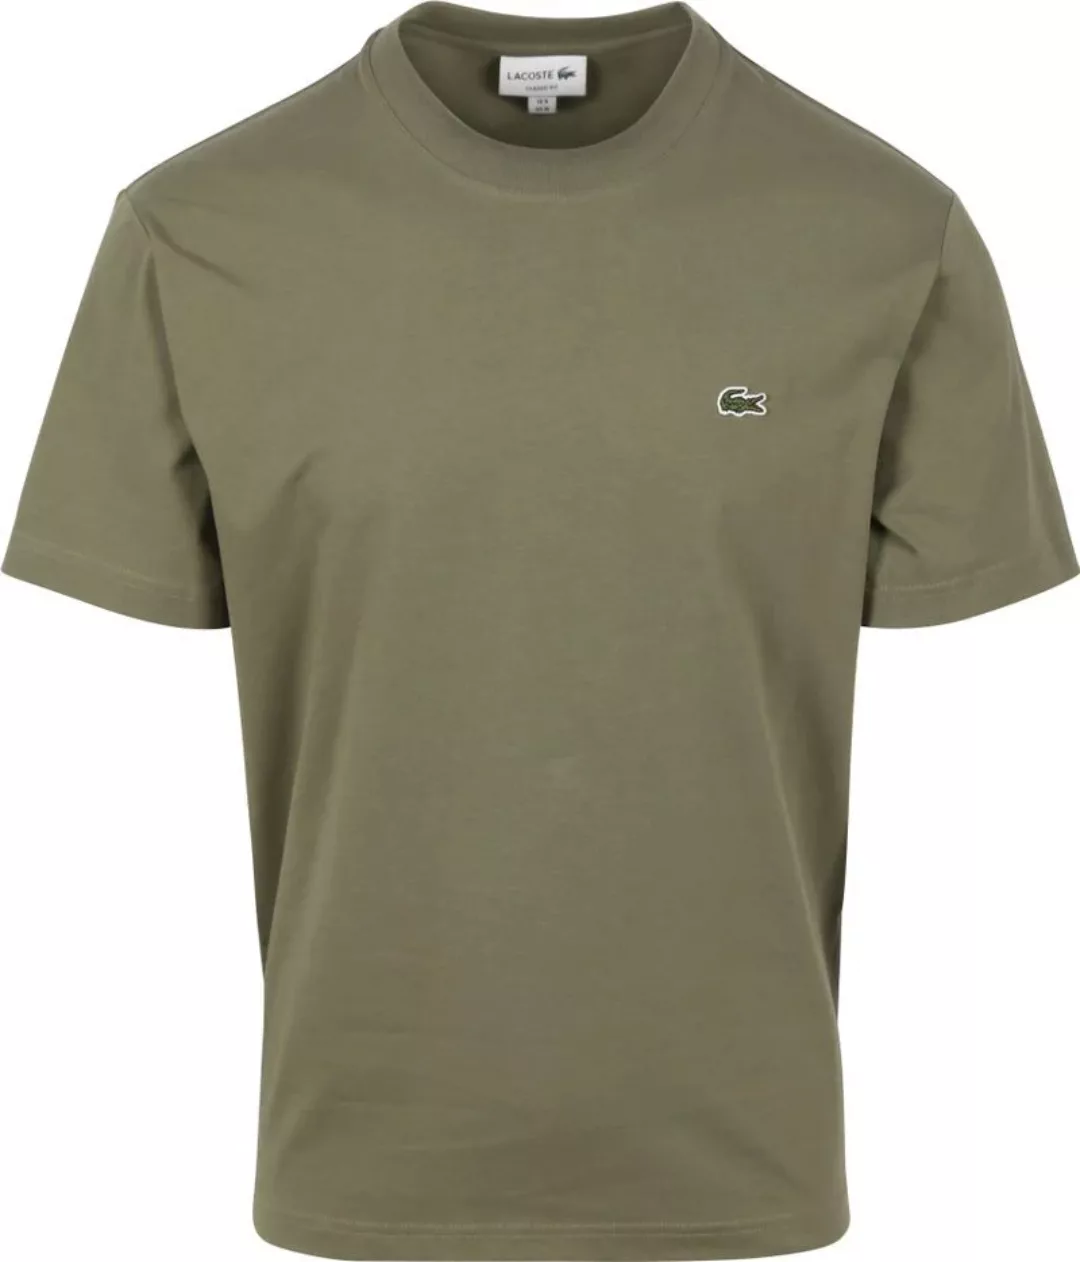 Lacoste T-Shirt Olivgrün - Größe XL günstig online kaufen